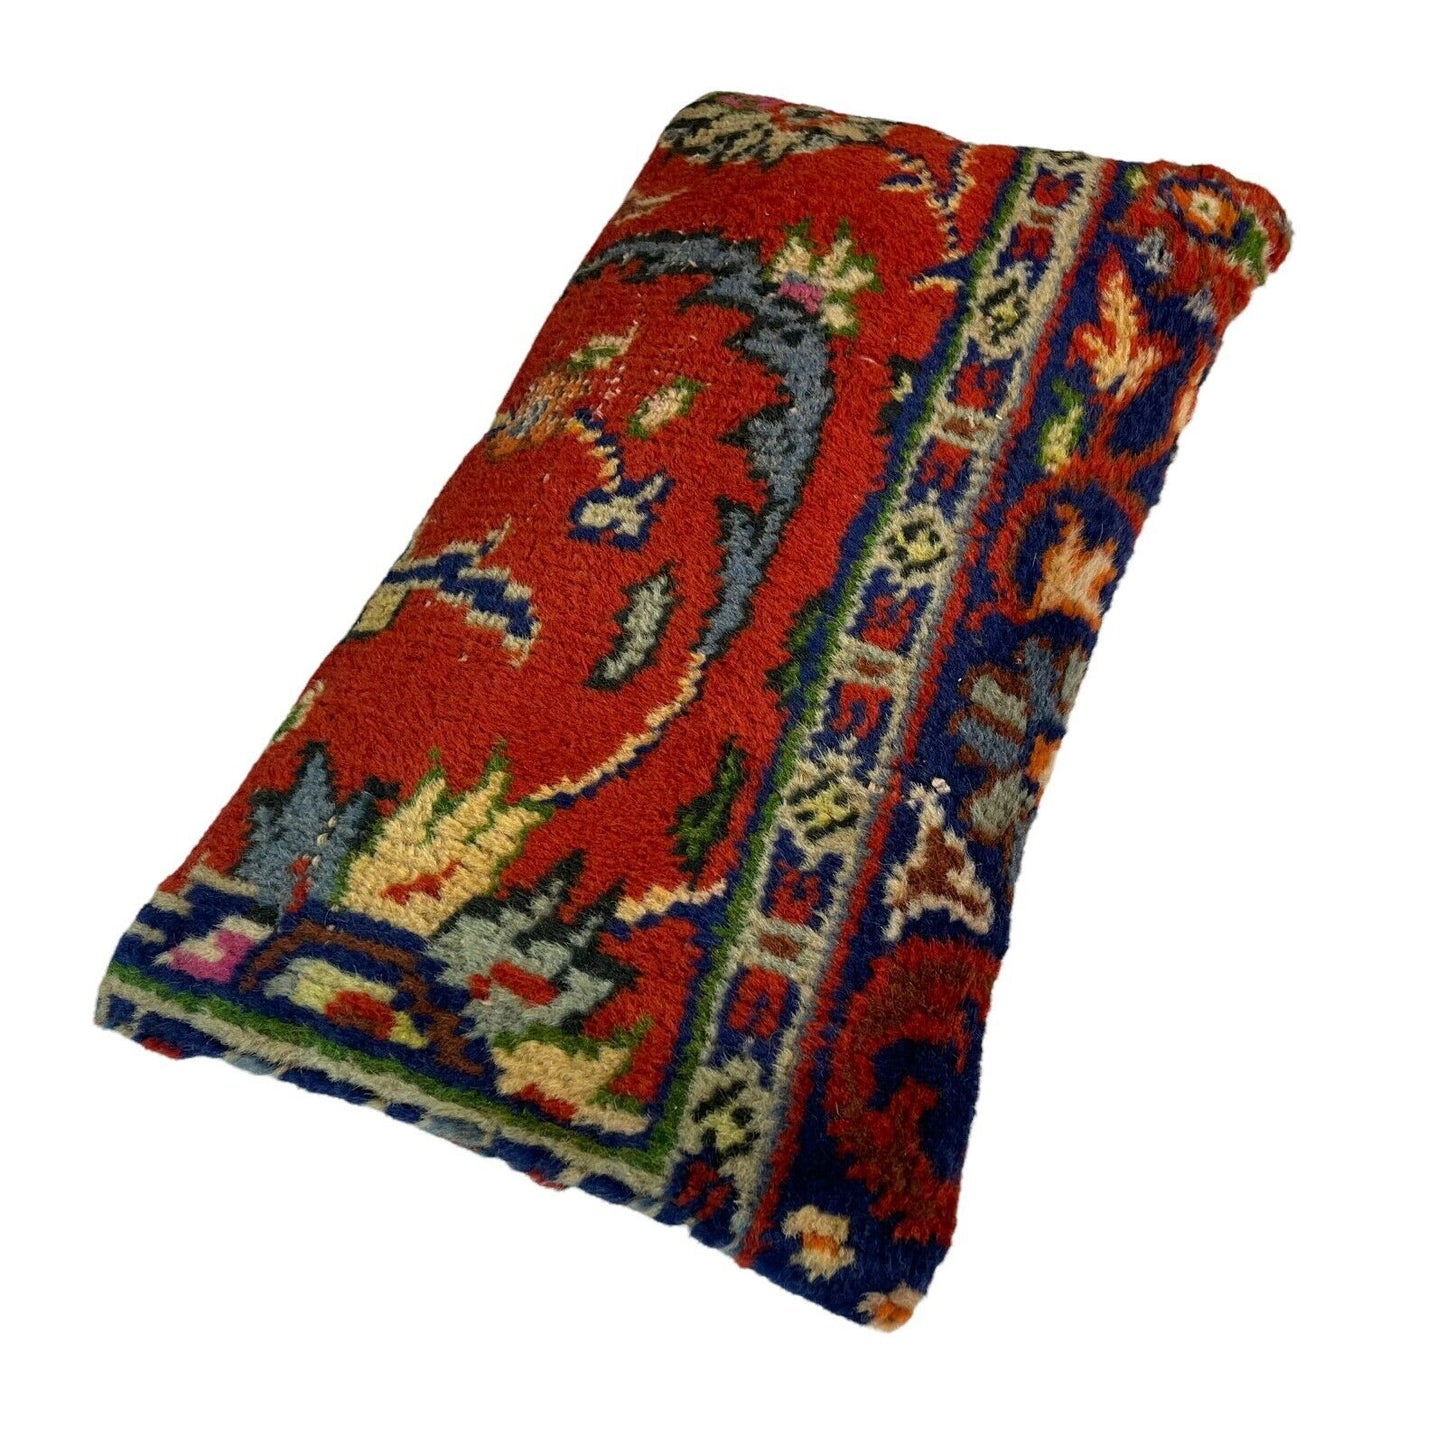 30x60 cm  , Vintage Turkish Cushion Cover ,  Vintage Handgemachte Kissenbezug